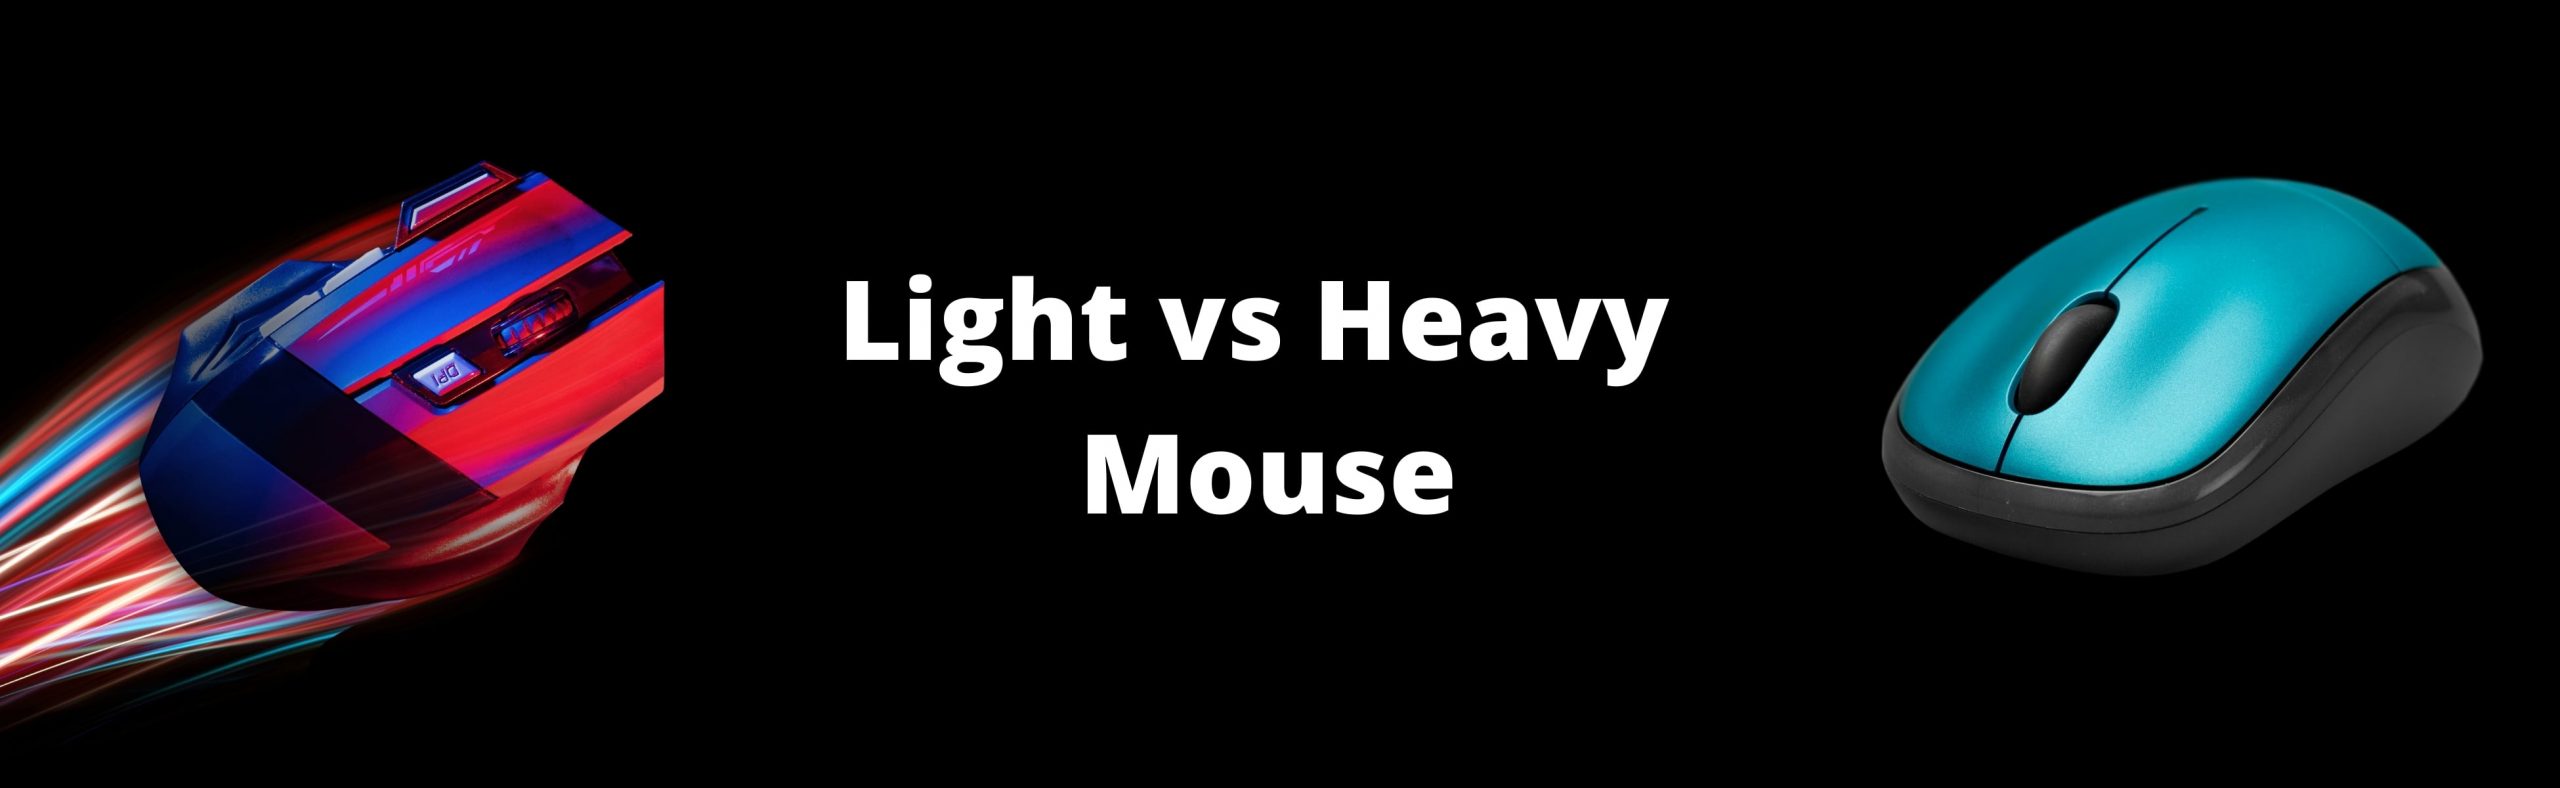 Light vs Heavy Mouse banner